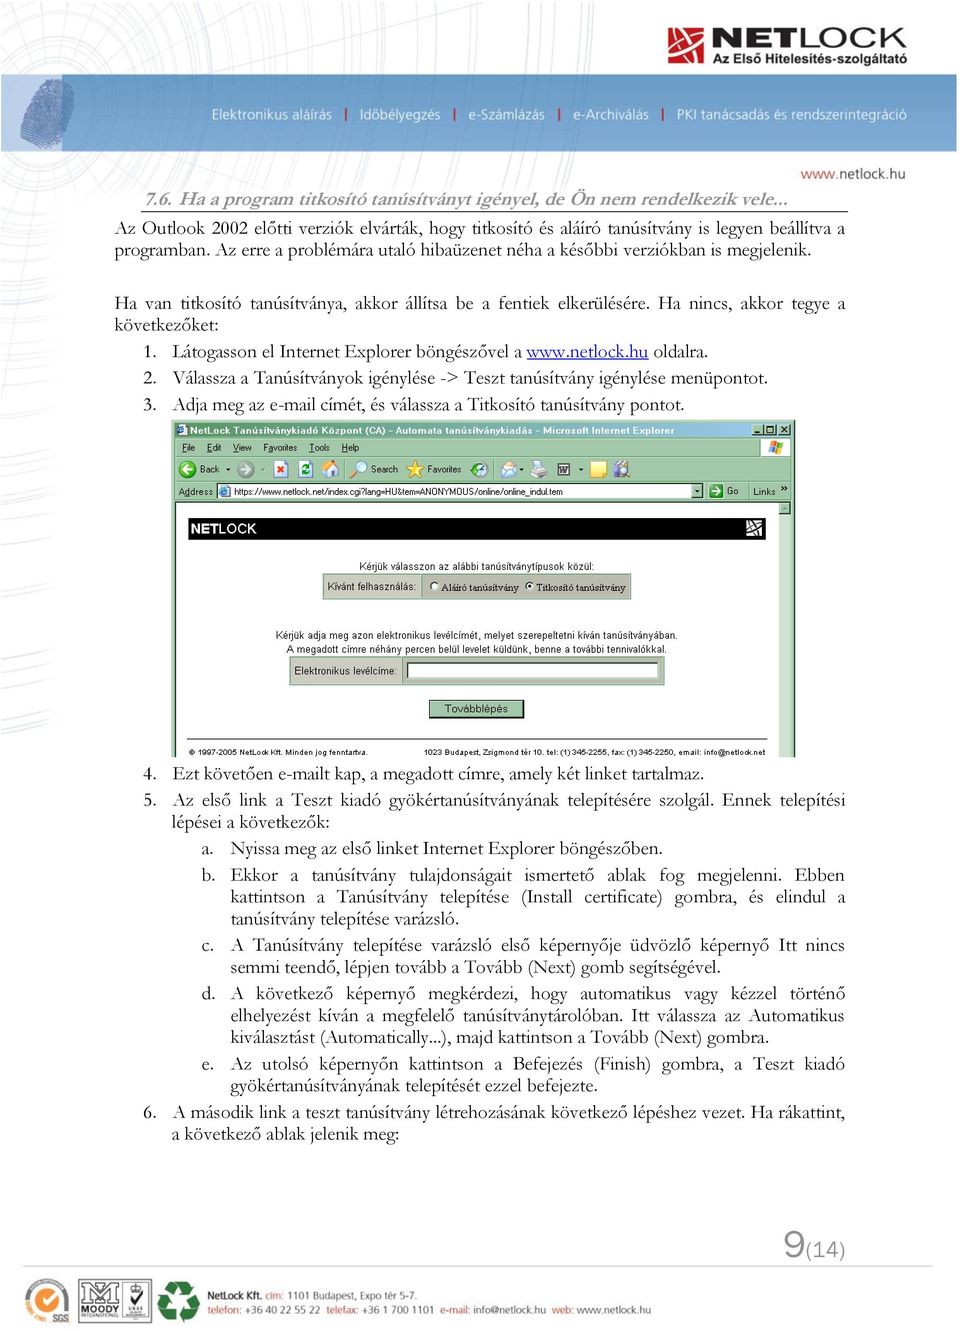 Látogasson el Internet Explorer böngészővel a www.netlock.hu oldalra. 2. Válassza a Tanúsítványok igénylése -> Teszt tanúsítvány igénylése menüpontot. 3.